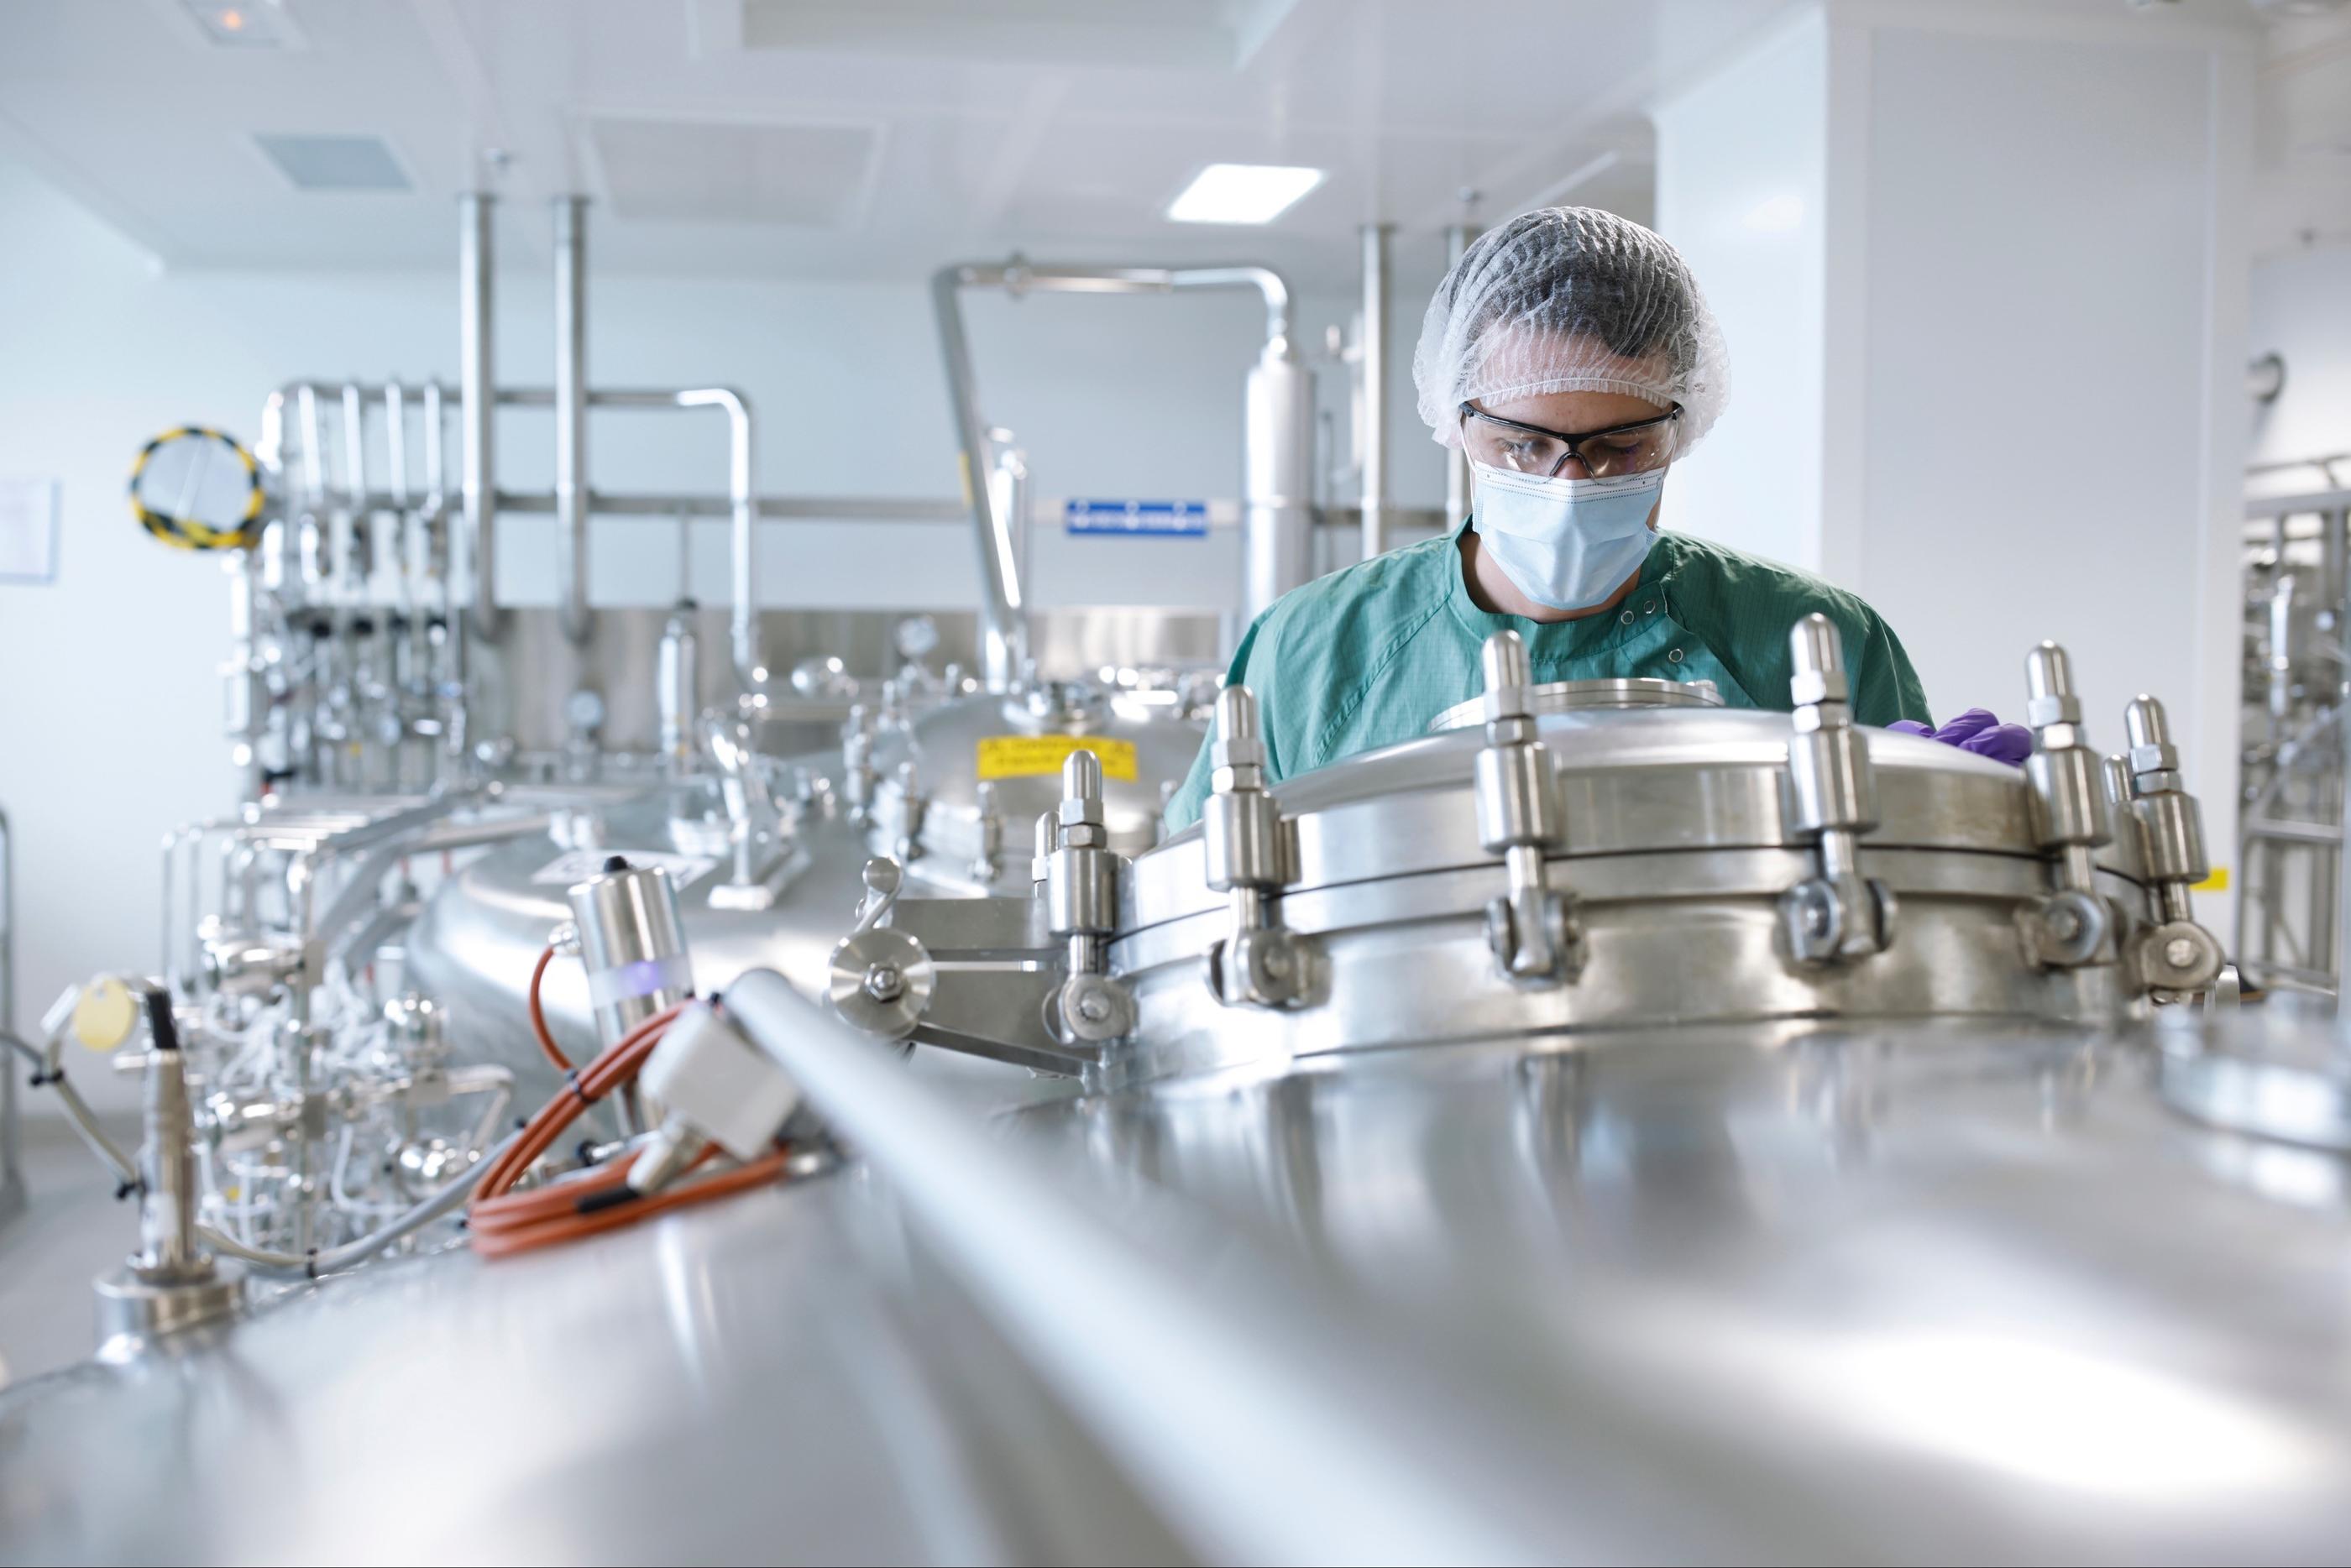 Vitry-sur-Seine (Val-de-Marne). Selon Sanofi, la nouvelle usine « permettra de doubler la capacité de production d’anticorps monoclonaux », utilisés notamment contre les cancers. Capa Pictures pour Sanofi